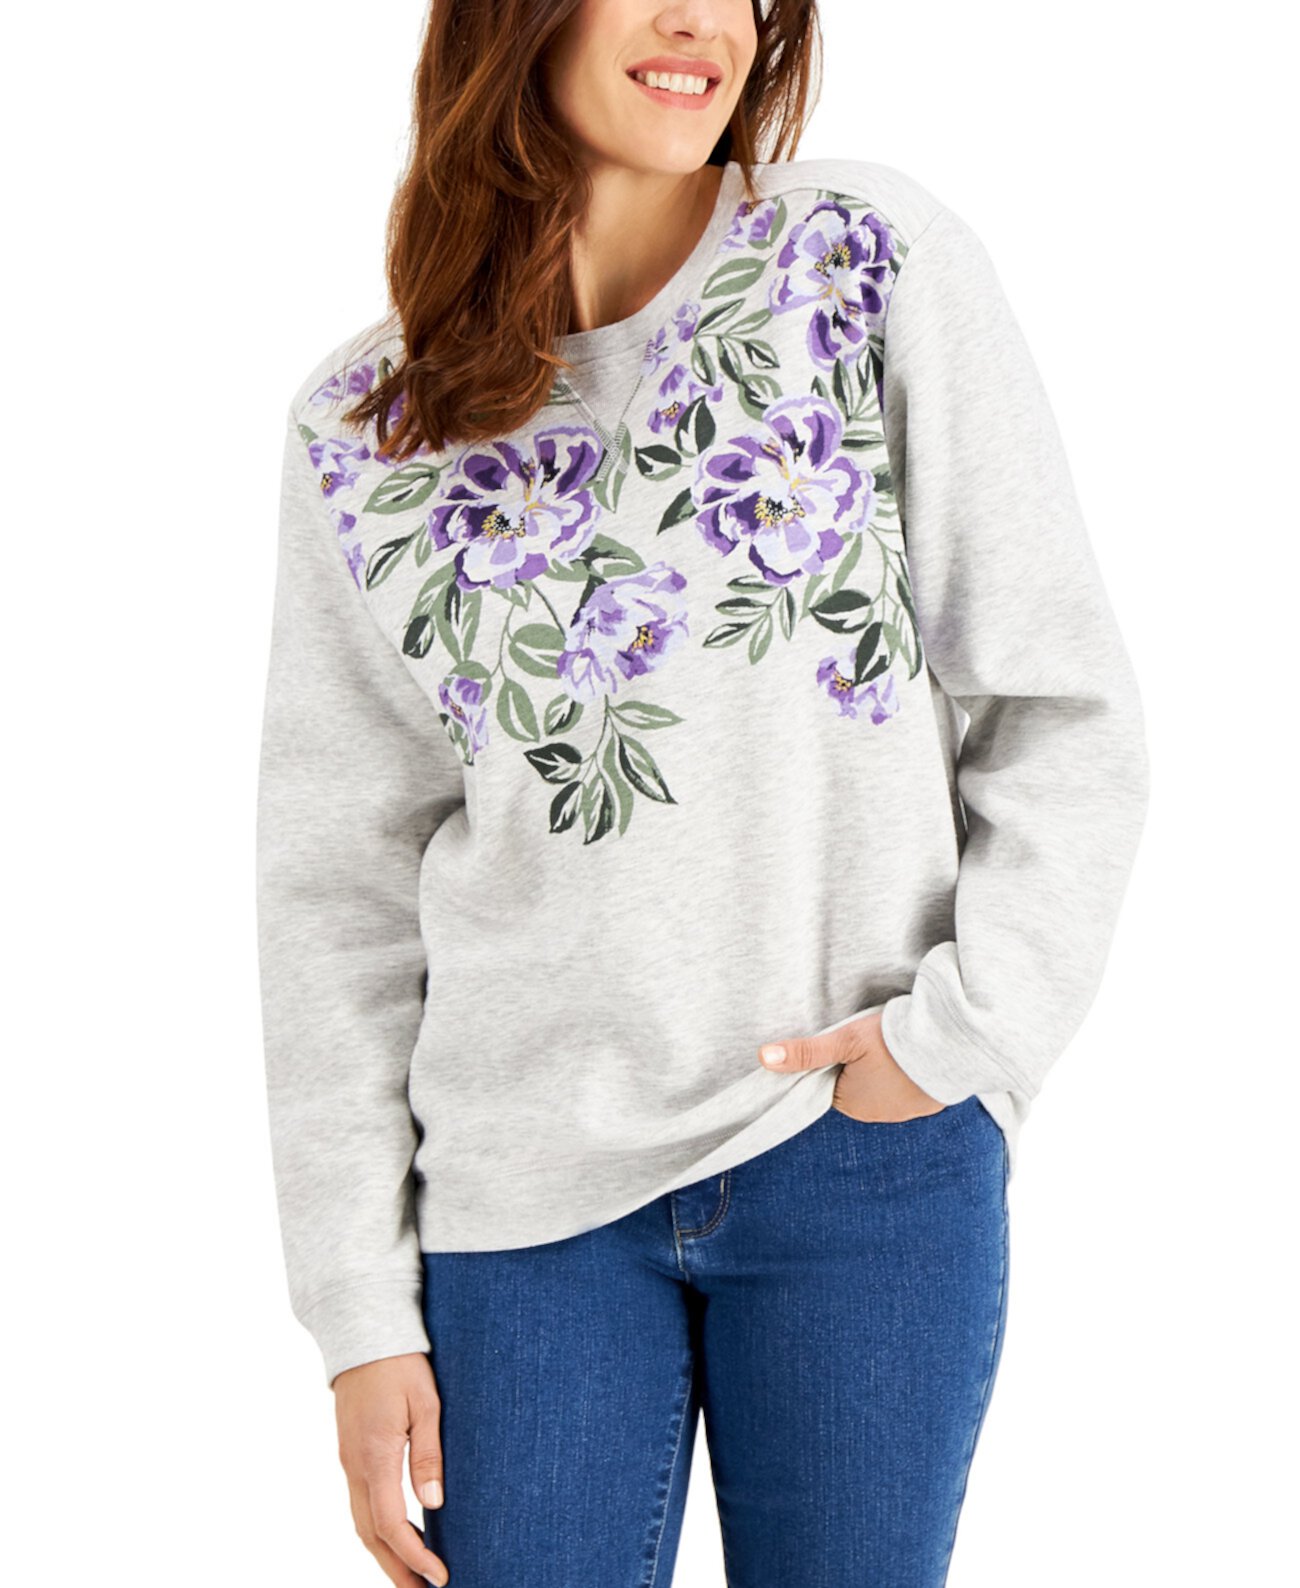 Floral-Print Sweatshirt, Created for Macy's Karen Scott